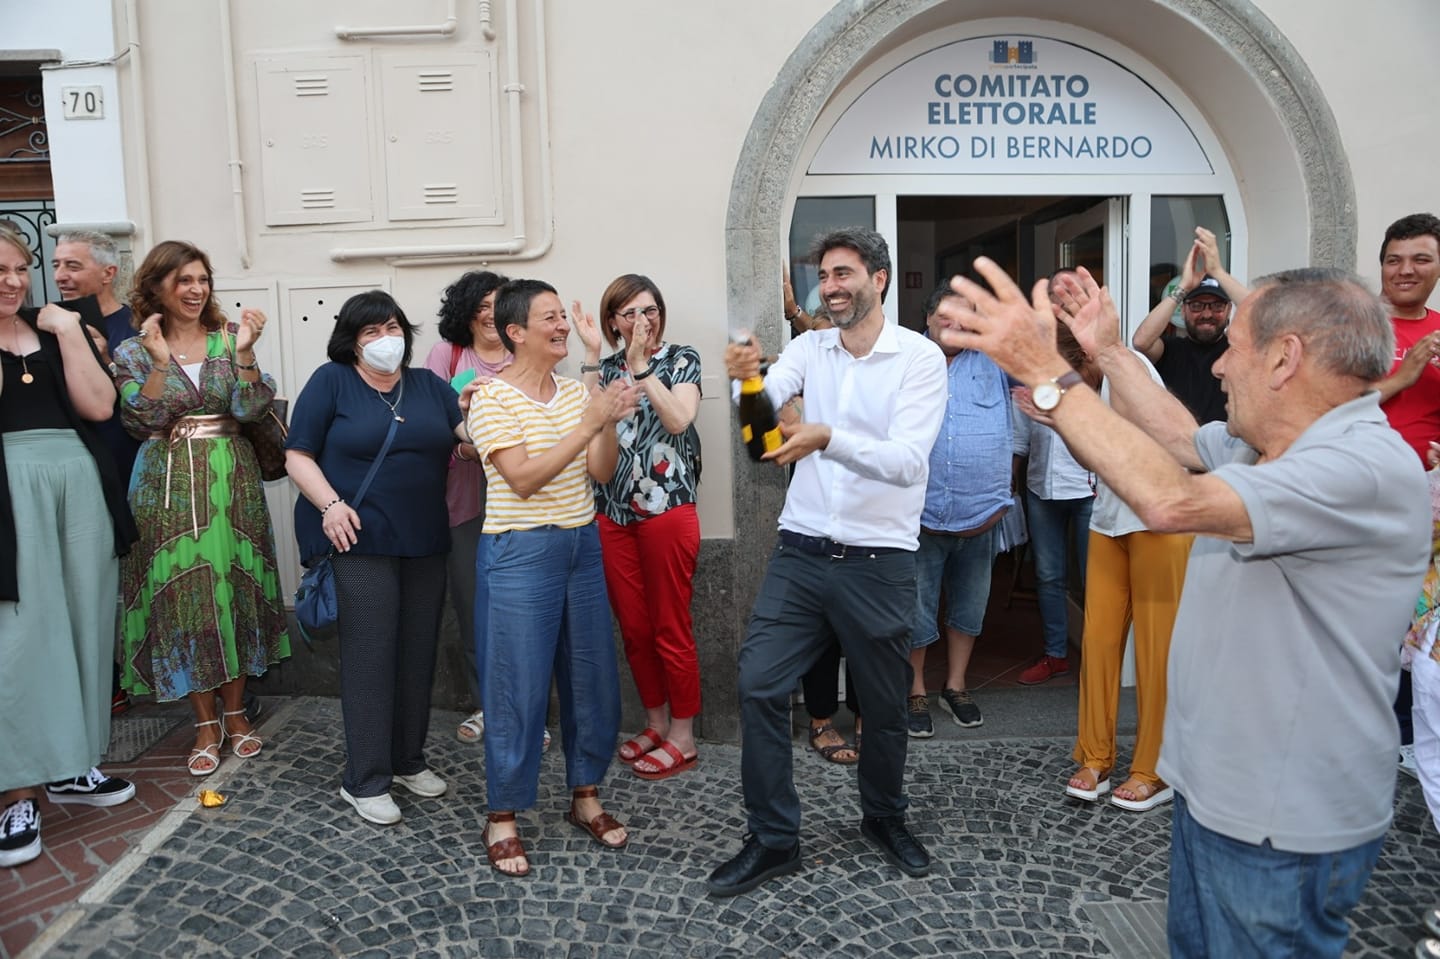 Mirko Di Bernardo e la squadra che ha vinto le elezioni grottaferrata 2022